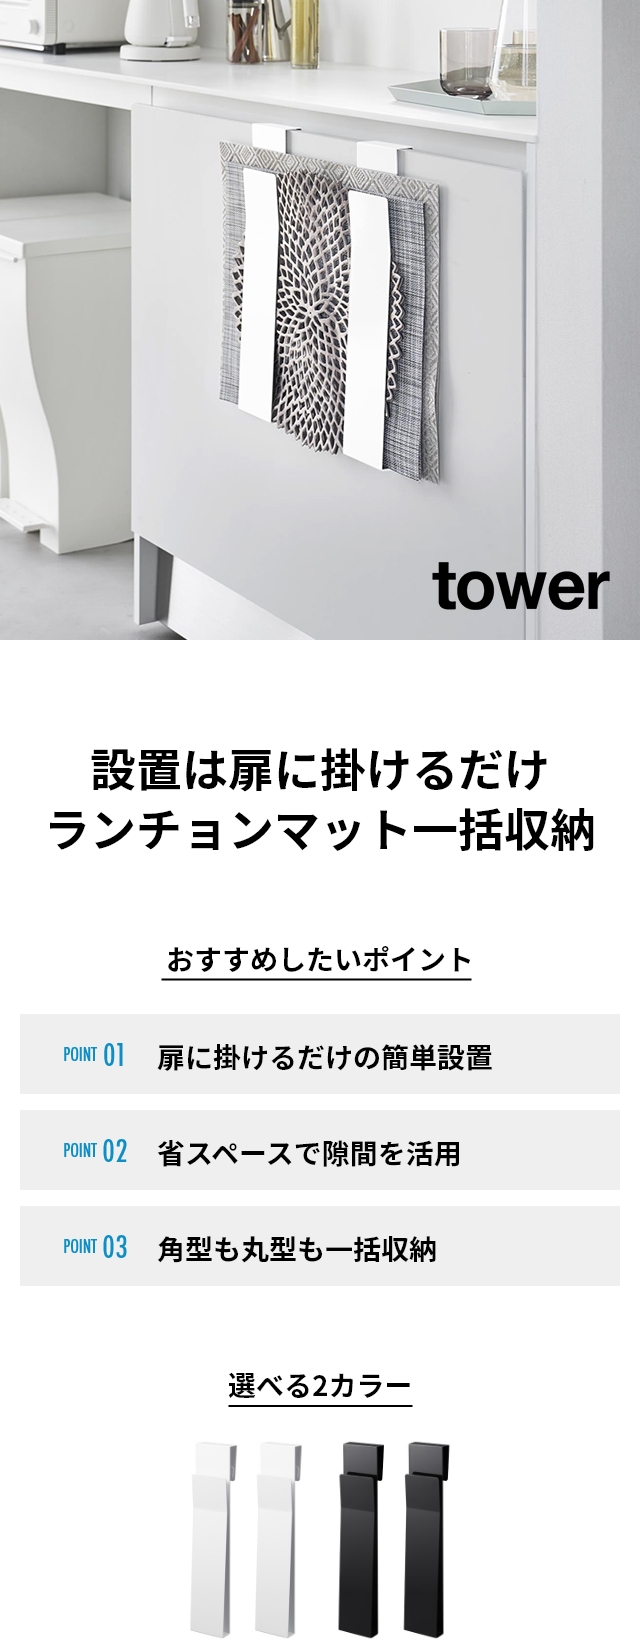 tower (タワー) 扉に掛けるランチョンマット収納